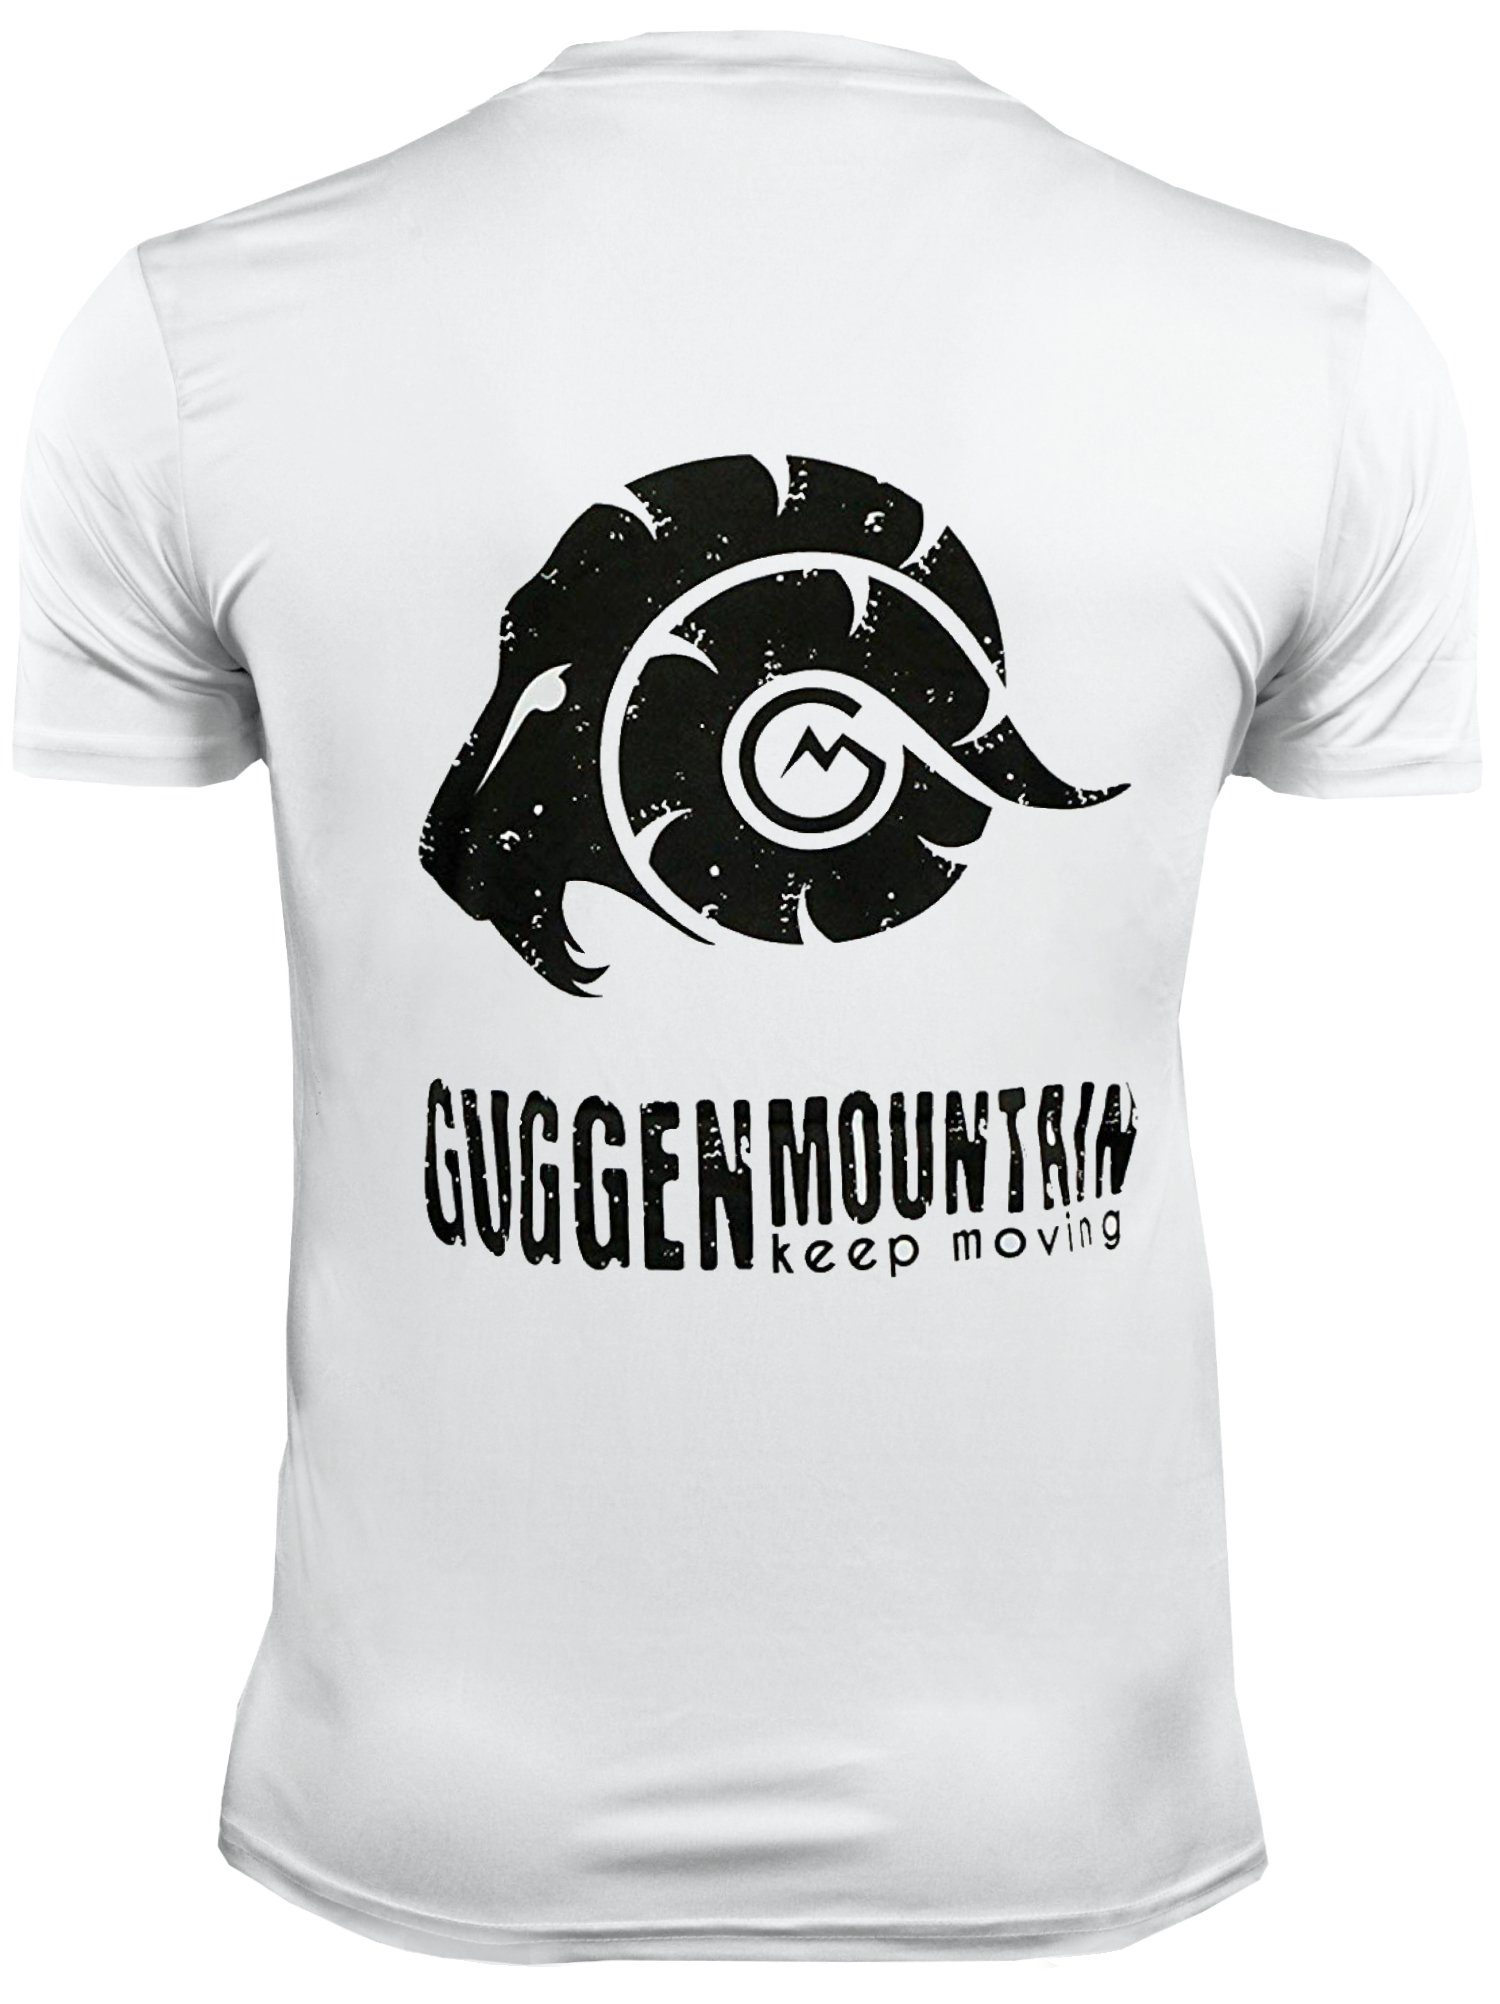 GUGGEN Mountain Funktionsshirt Funktionsshirt T-Shirt Herren Unifarben, Logo Weiss-MIT-Logo Kurzarm in Sportshirt FW04